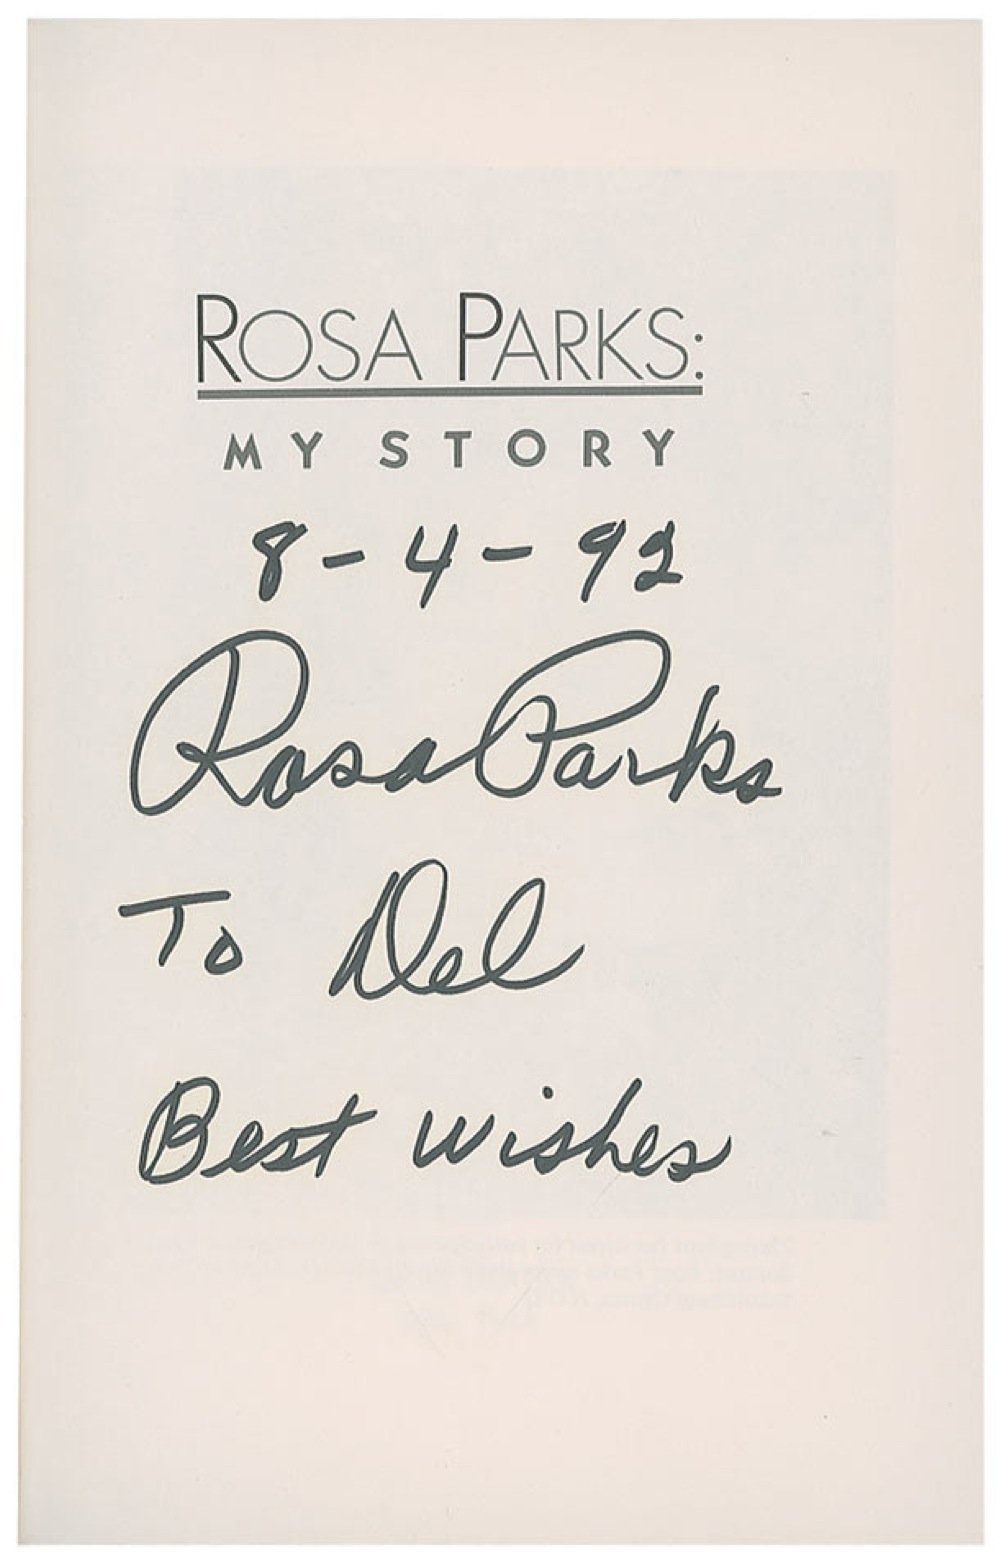 Lot #296 Rosa Parks